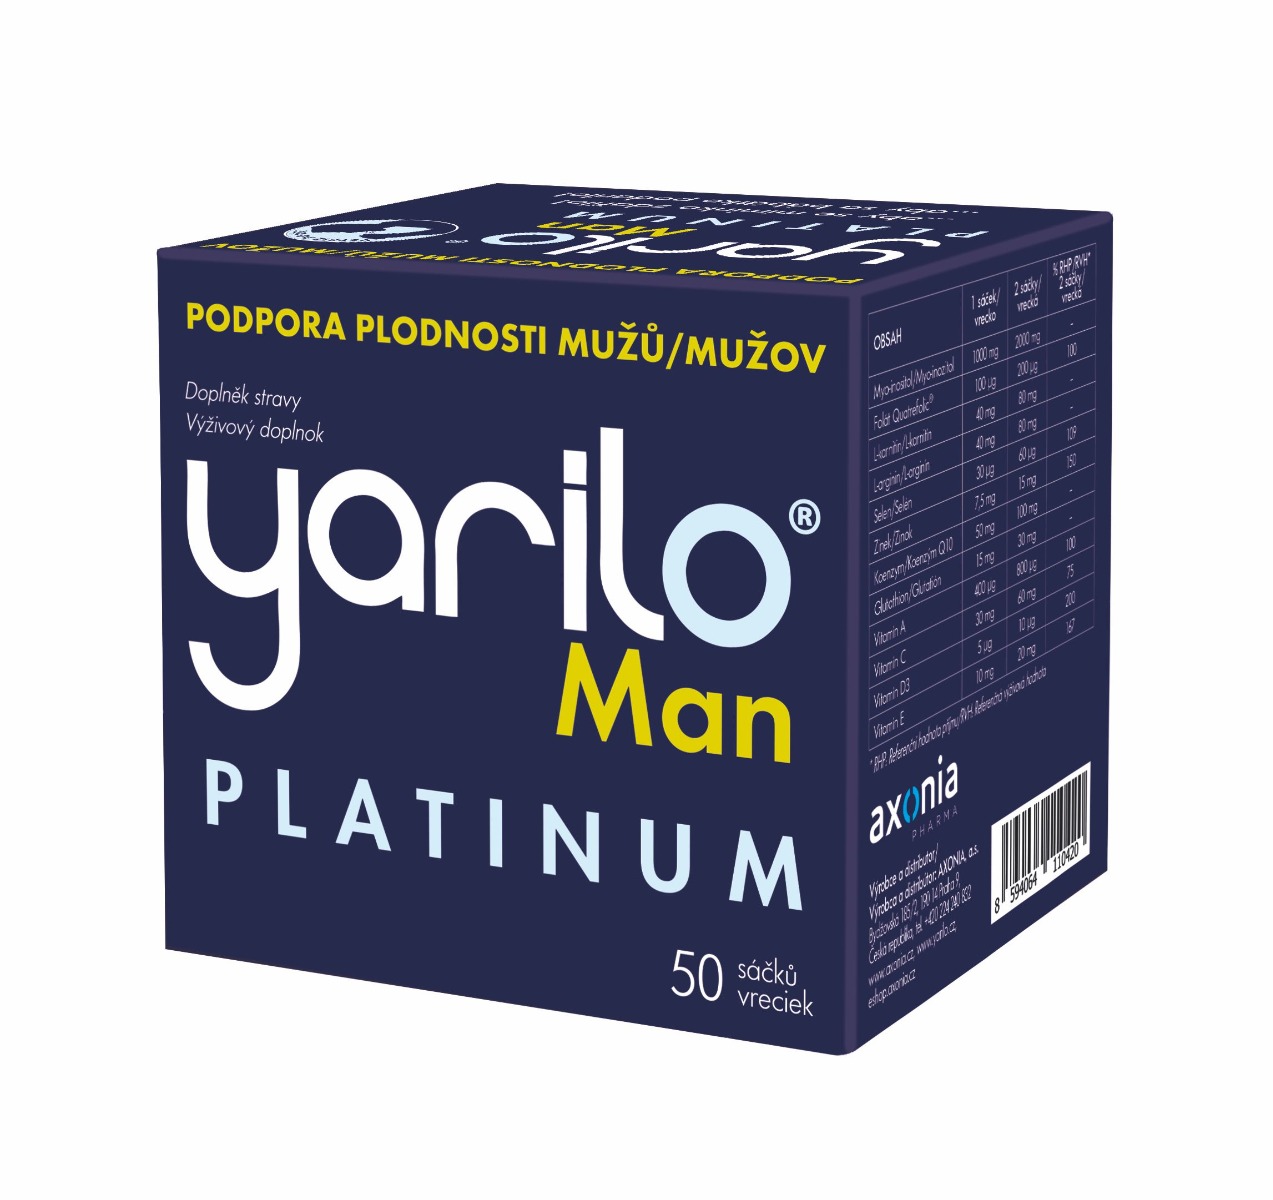 Yarilo Man Platinum 50 sáčků Yarilo